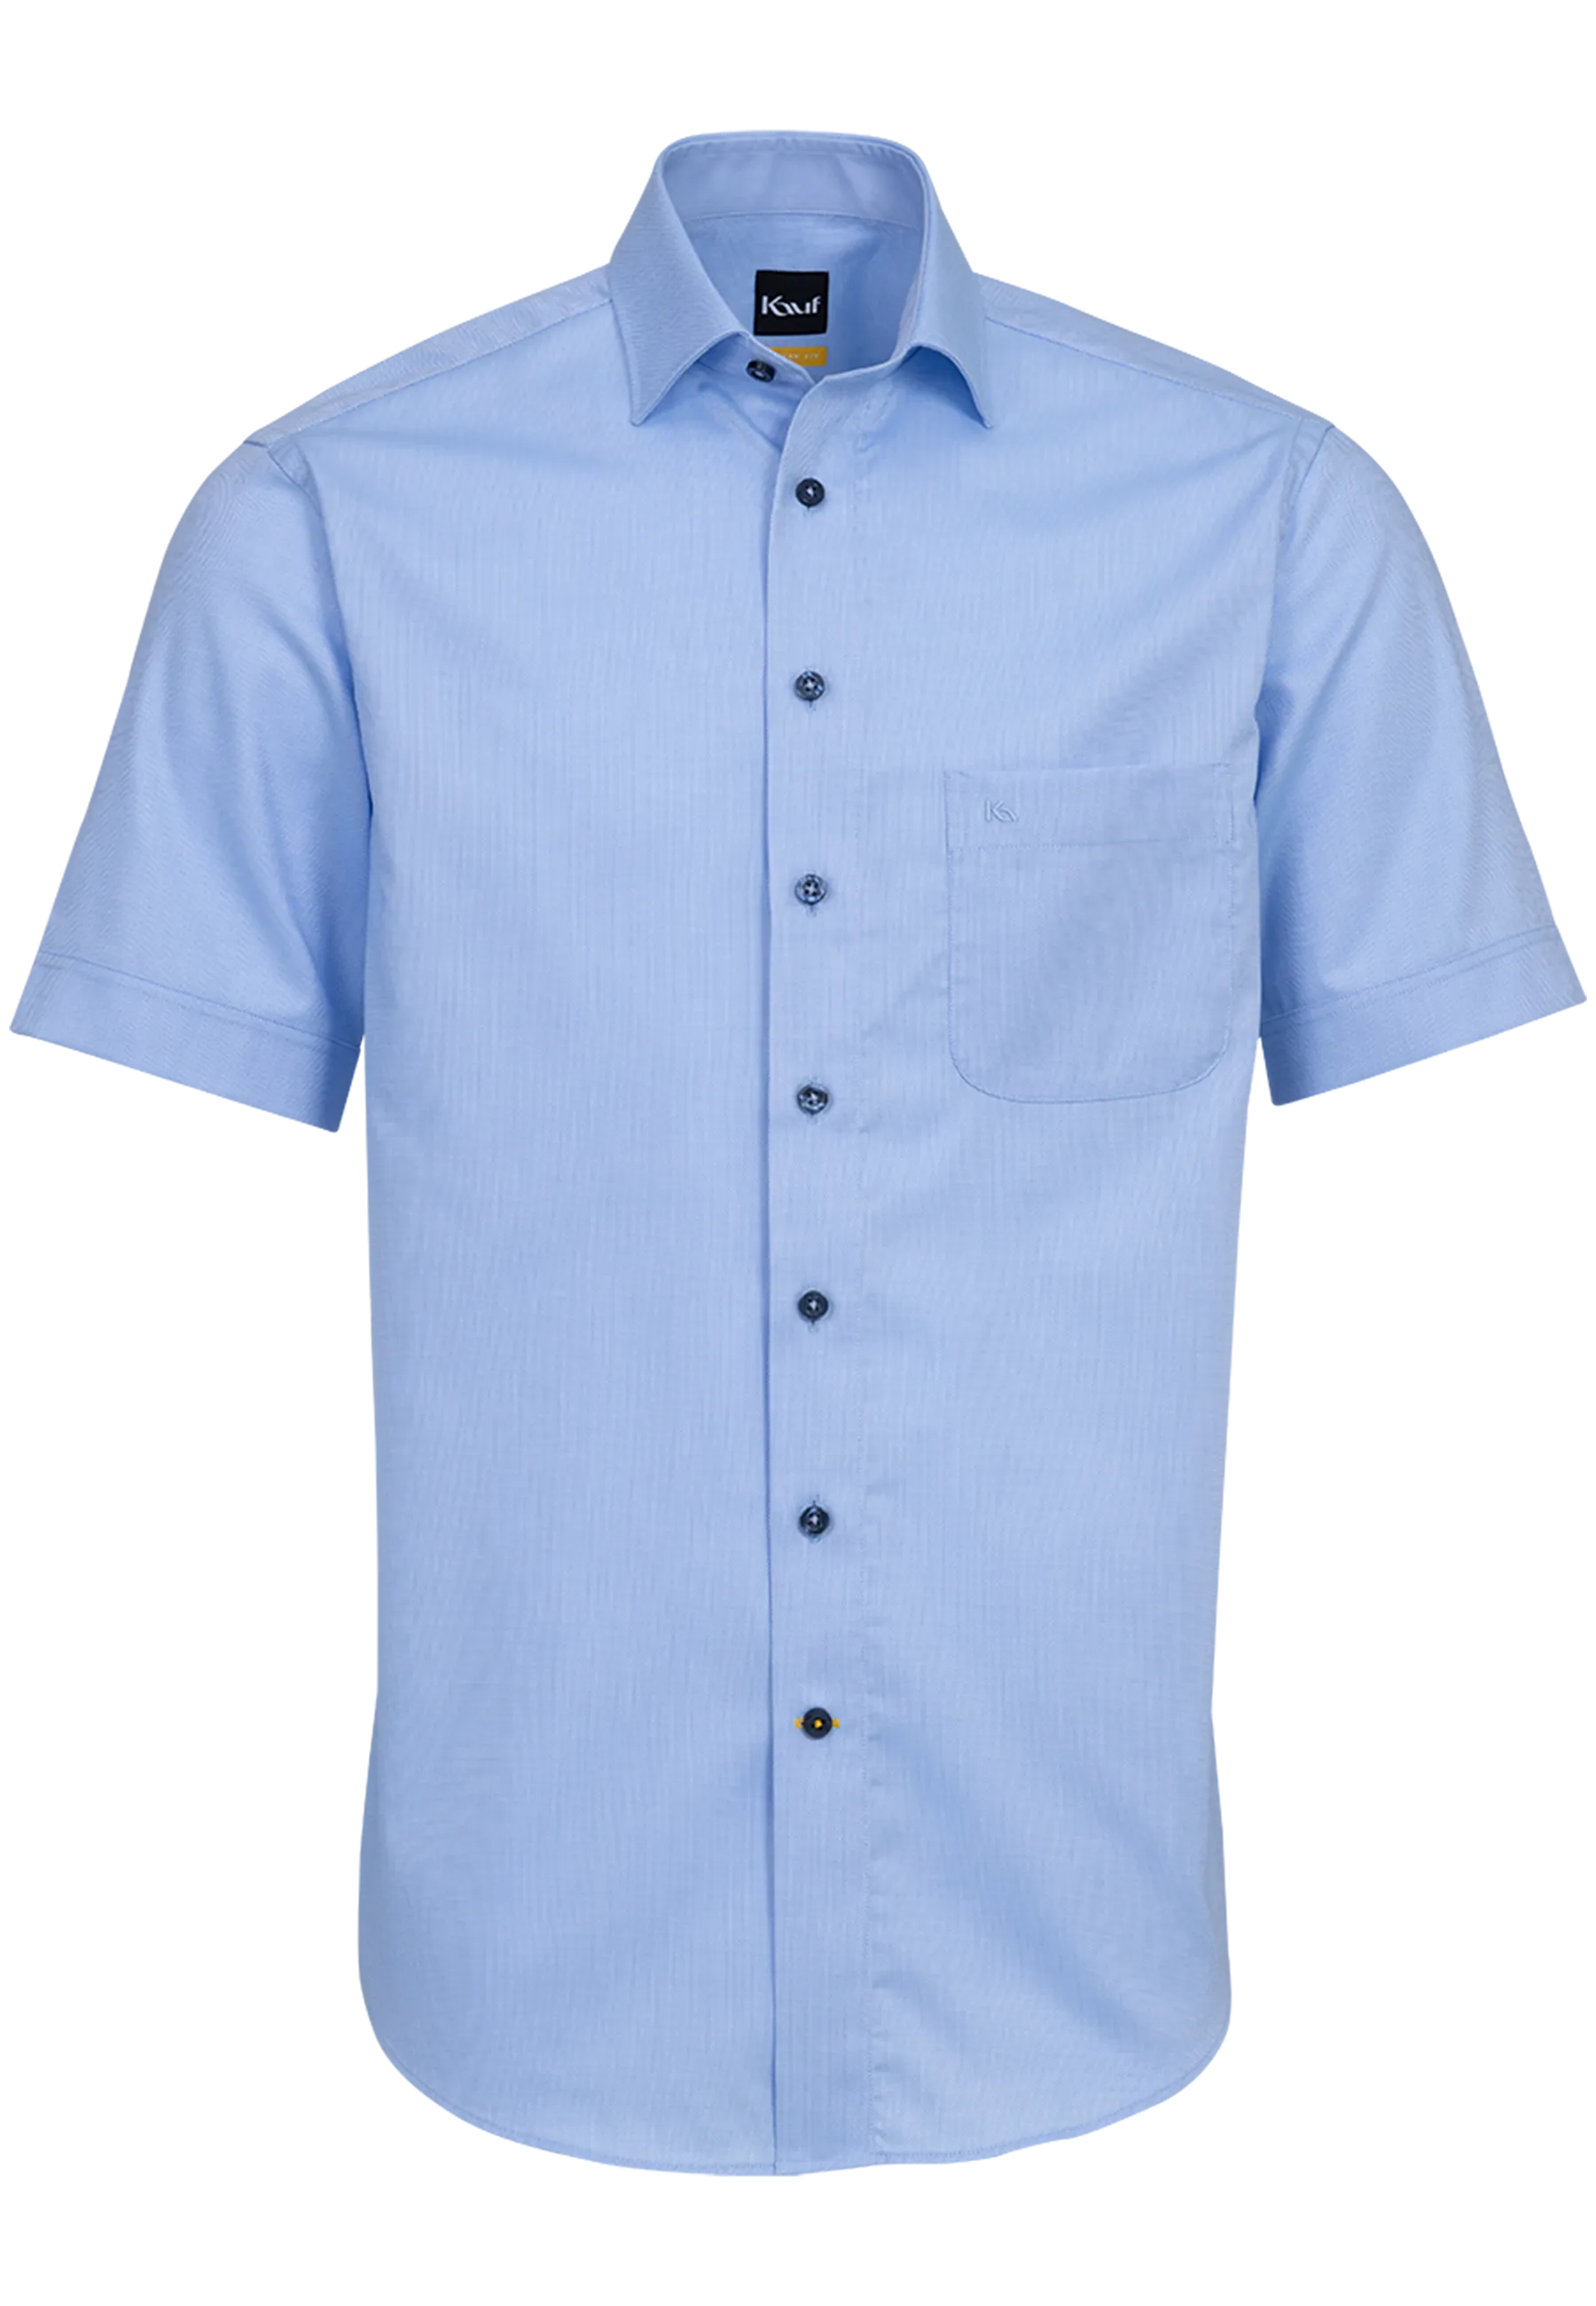 Ein blaues Hemd